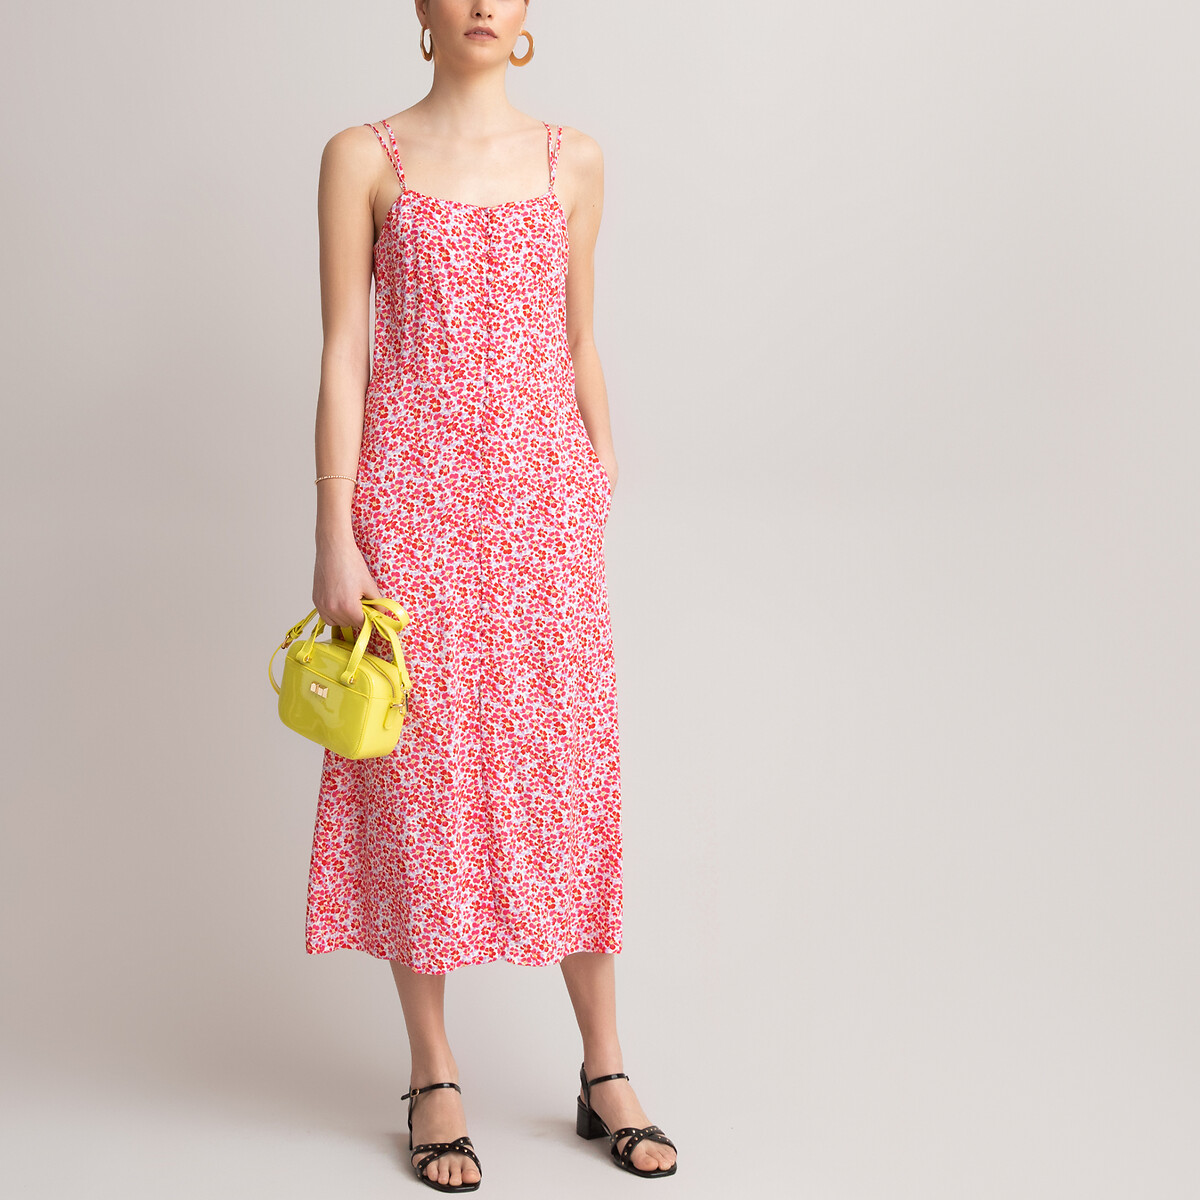 Платье LaRedoute Длинное прямое  с цветочным принтом 40 (FR) - 46 (RUS) розовый, размер 40 (FR) - 46 (RUS) Длинное прямое  с цветочным принтом 40 (FR) - 46 (RUS) розовый - фото 2